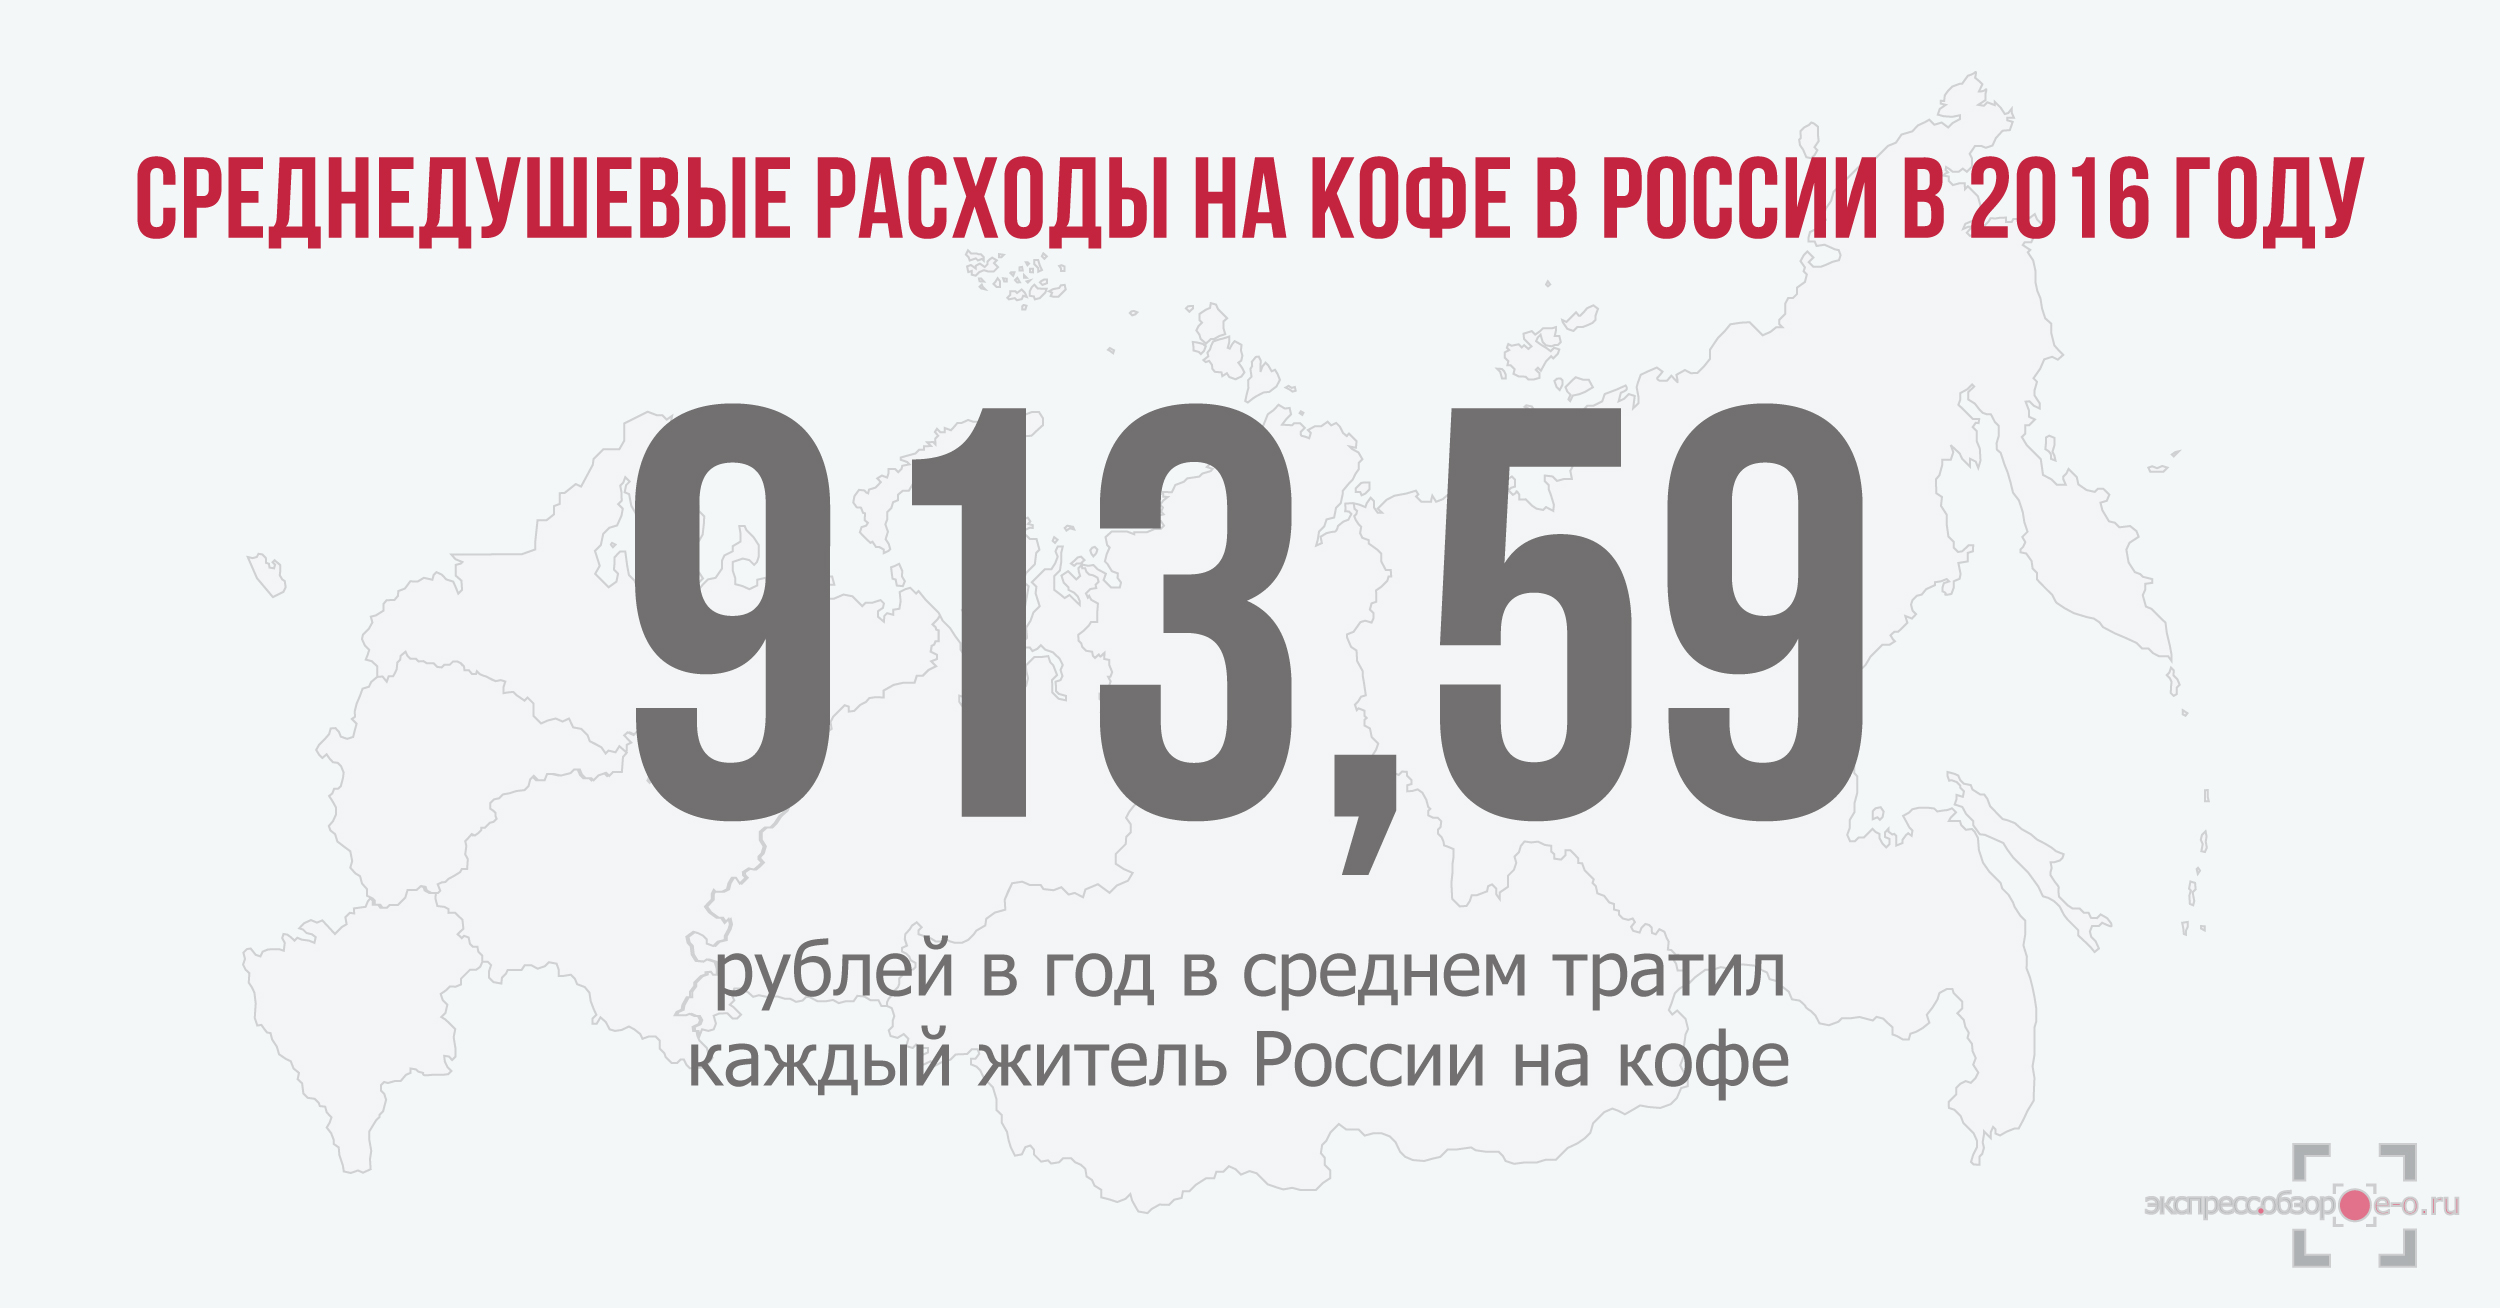 расходы россиян на кофе в 2016 году